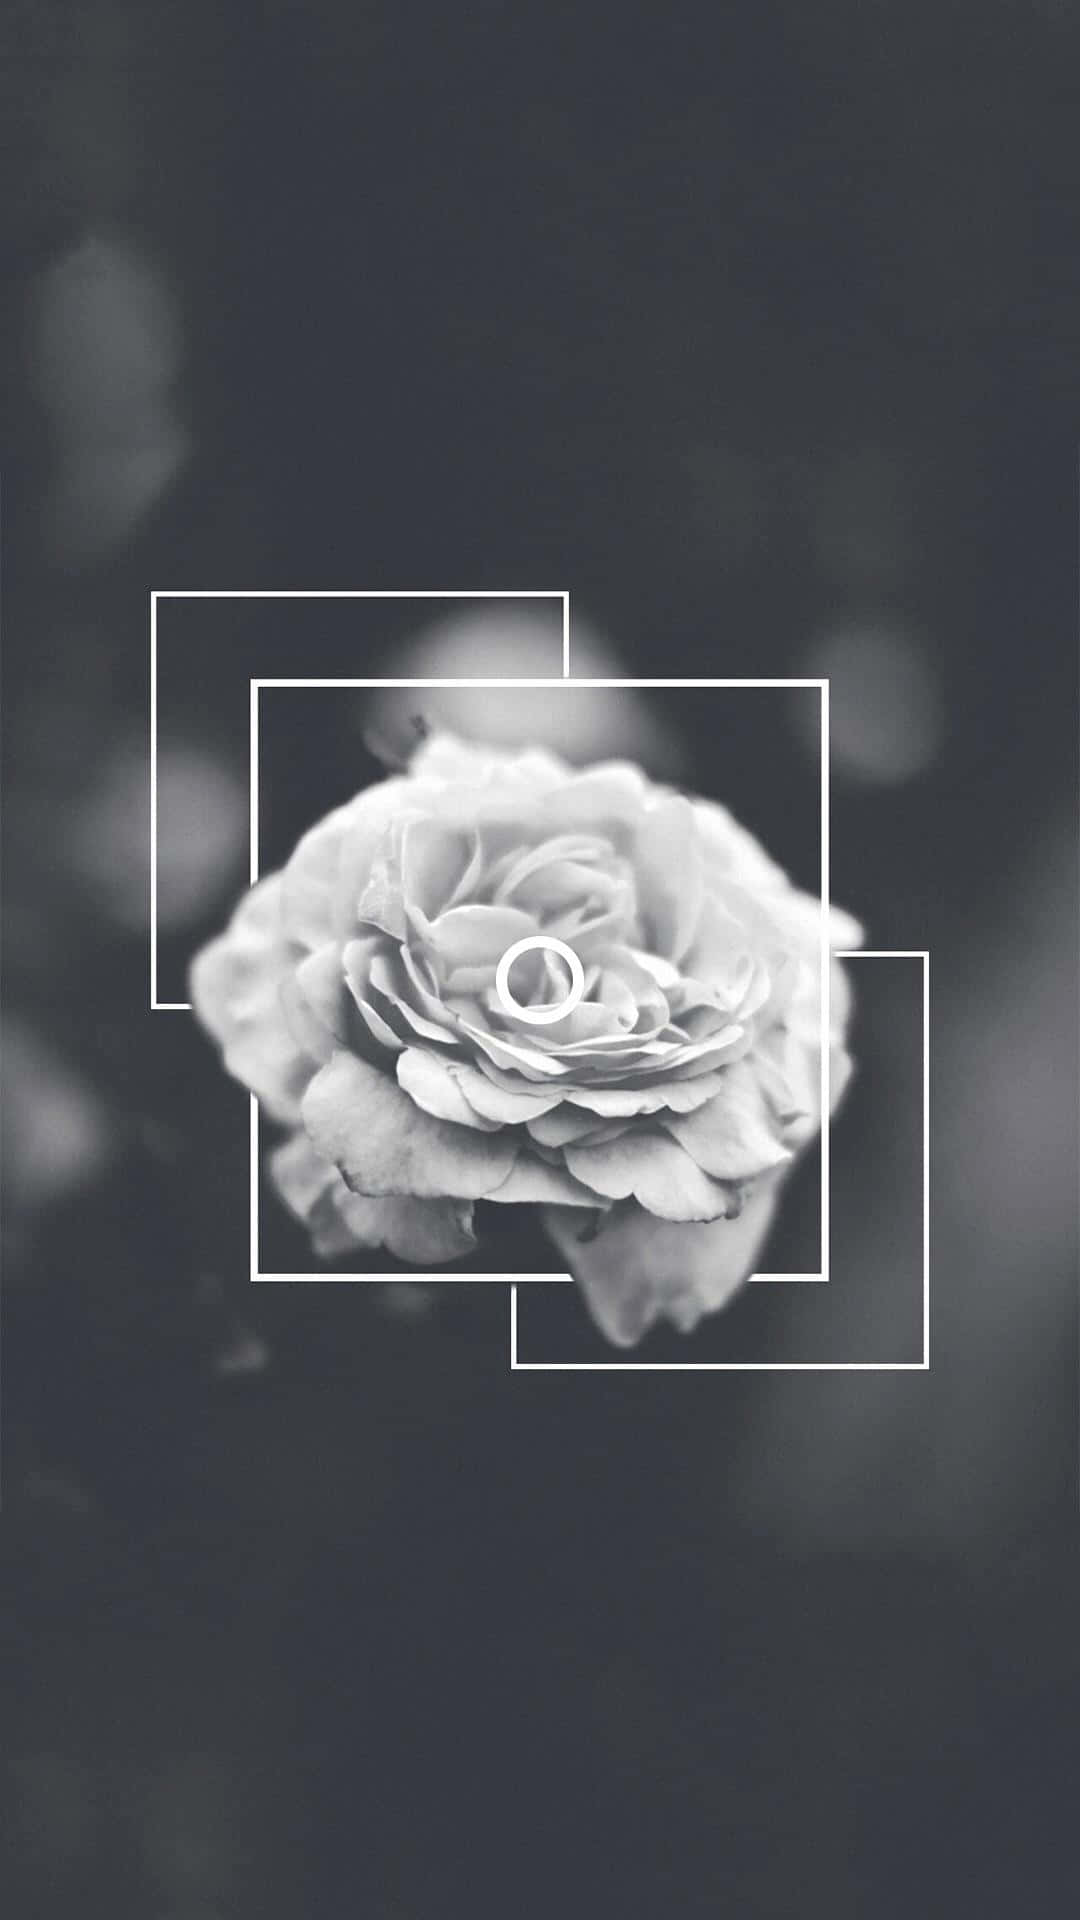 Rose Flower Black And White Aesthetic Phone Wallpaper